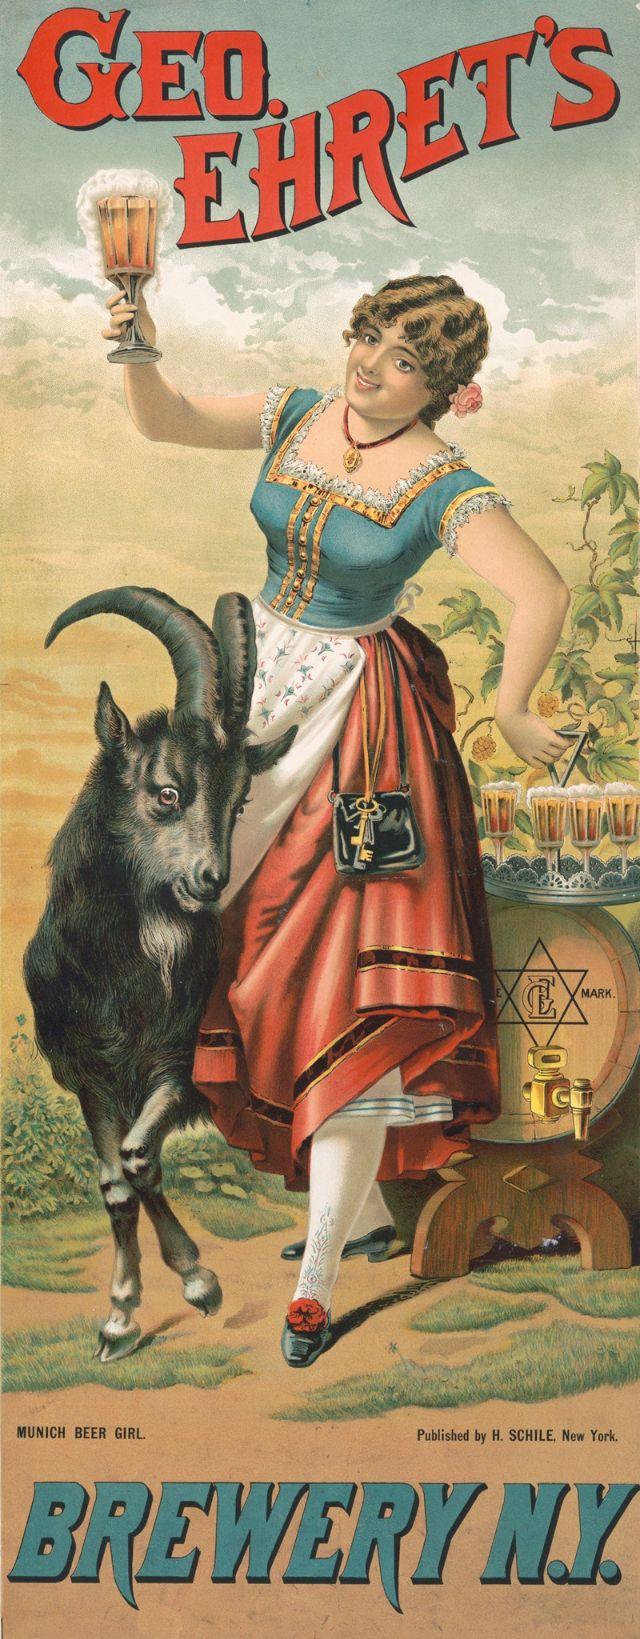 Geo Ēretas alus darītava... Autors: Zibenzellis69 Alus reklāmas plakāti no 19. gadsimta